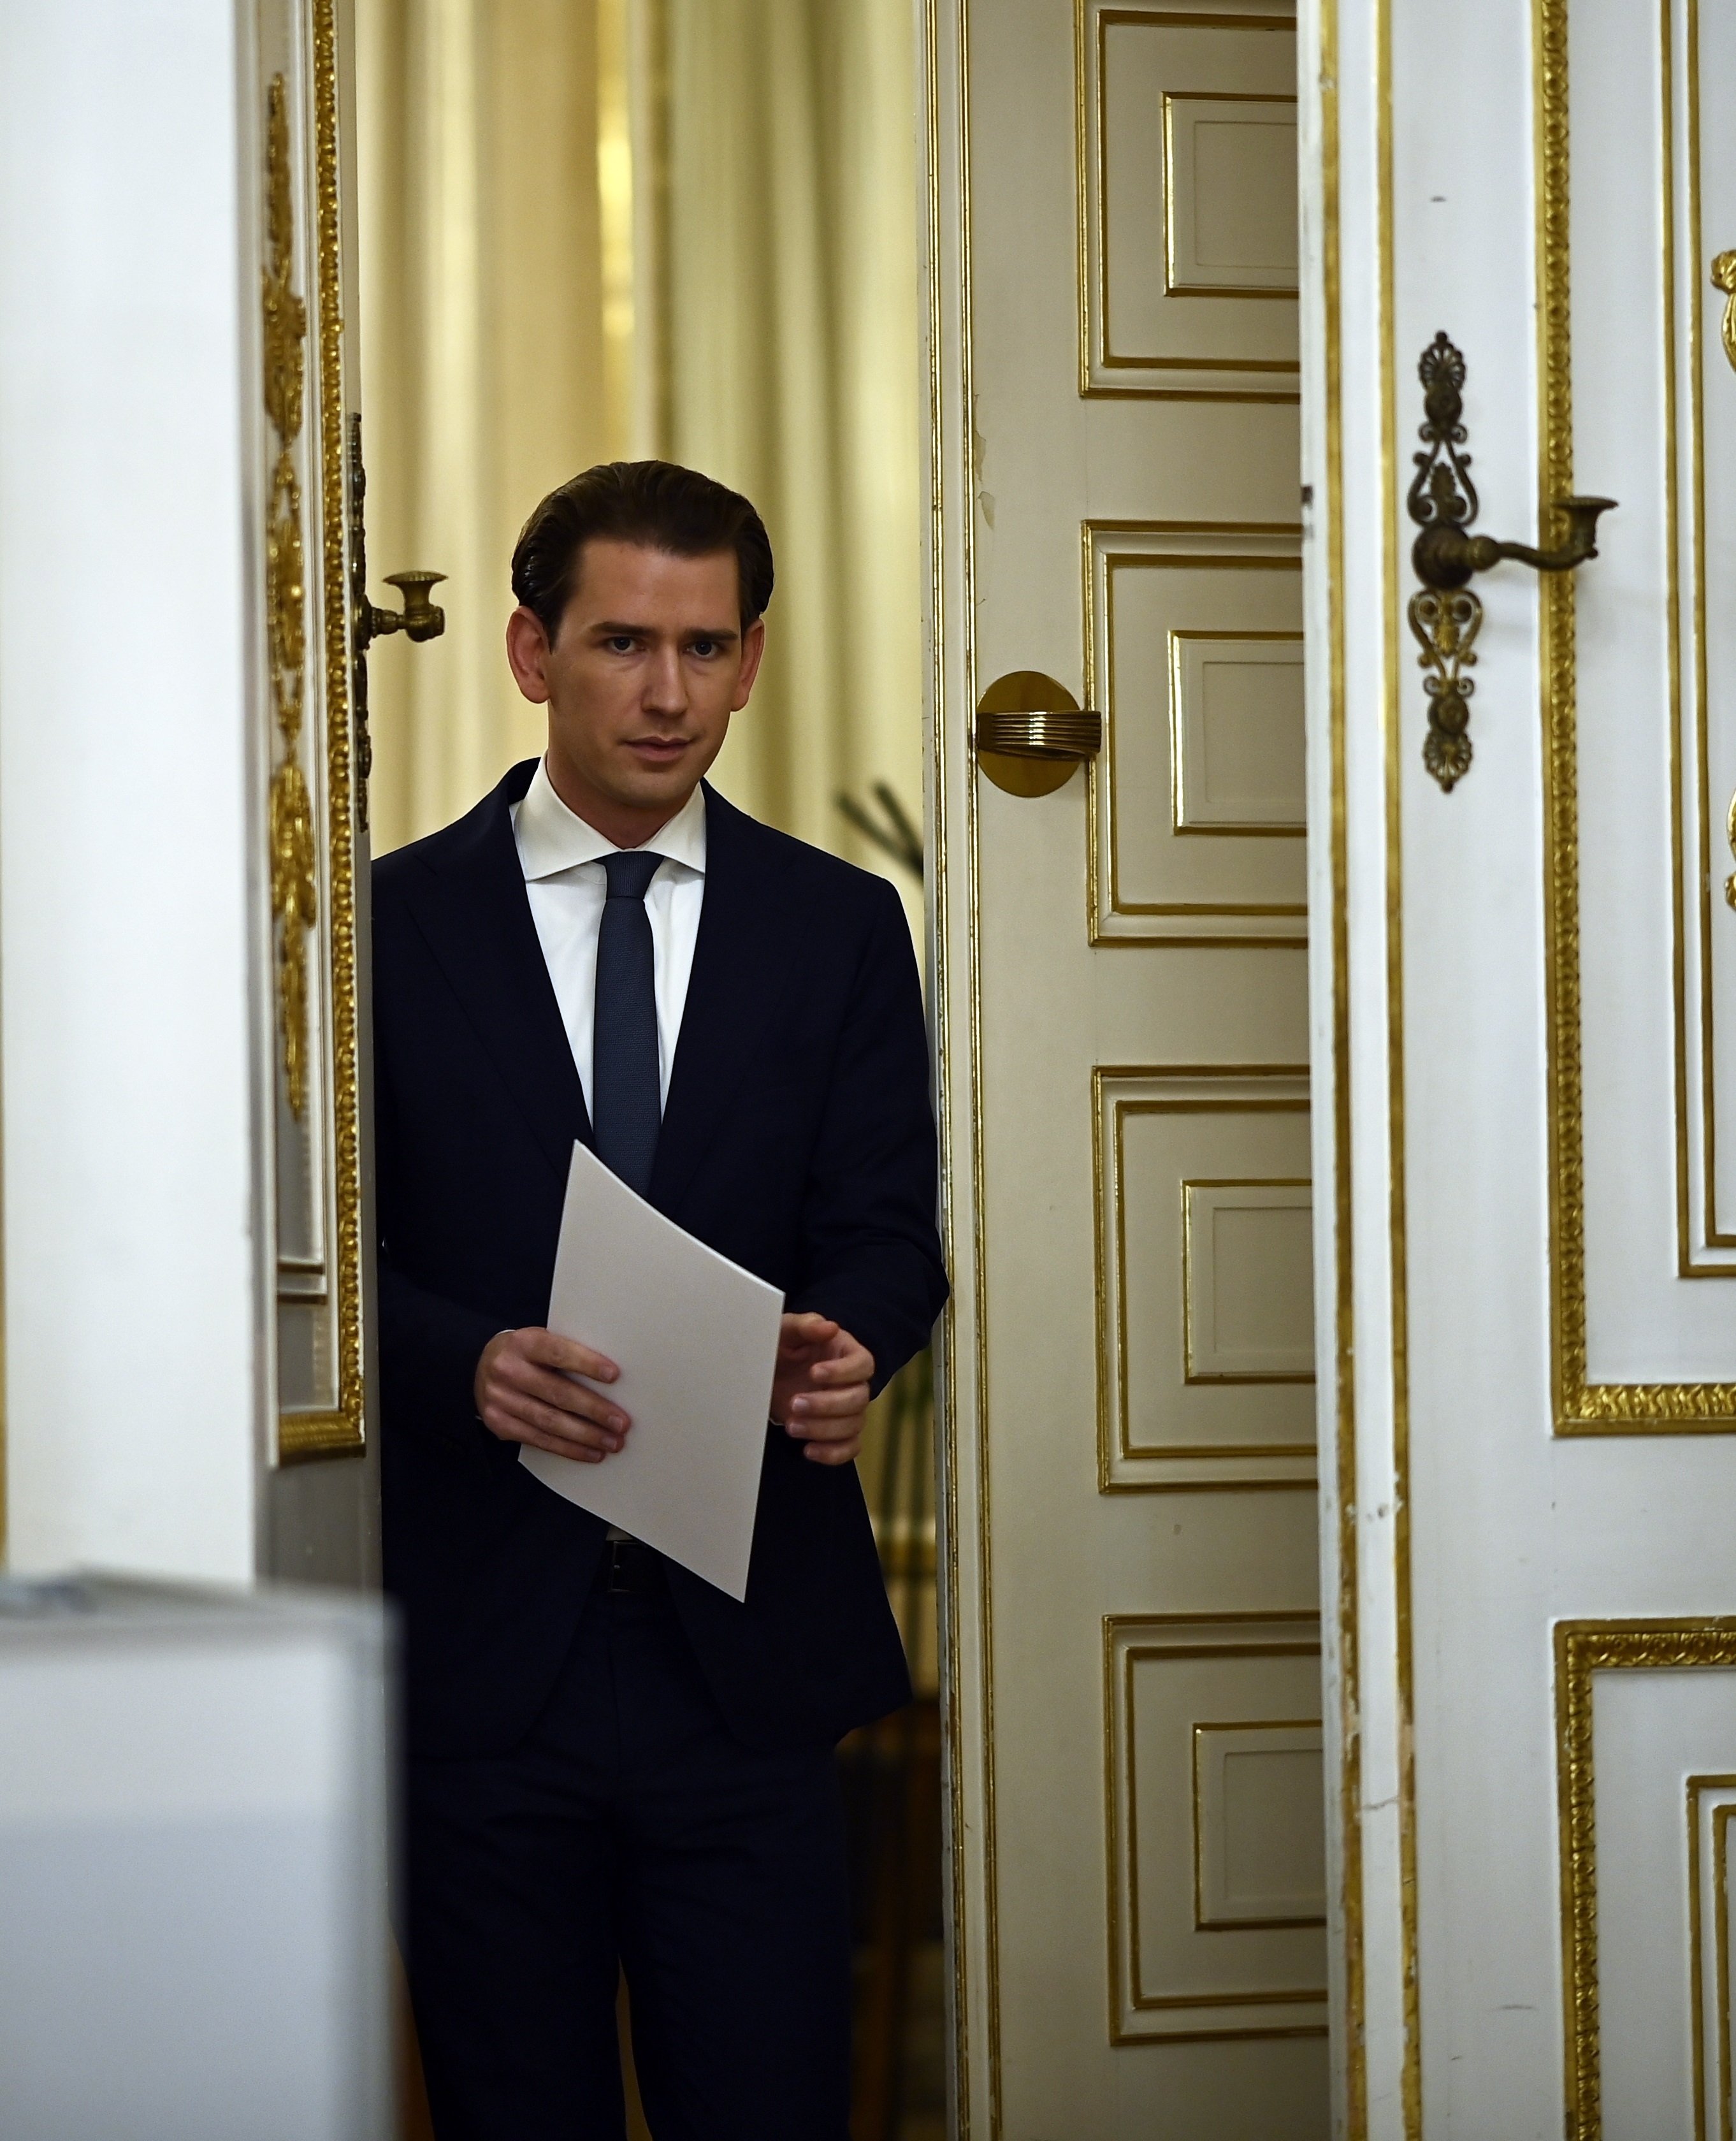 Dimite el canciller de Austria tras acusaciones de corrupción